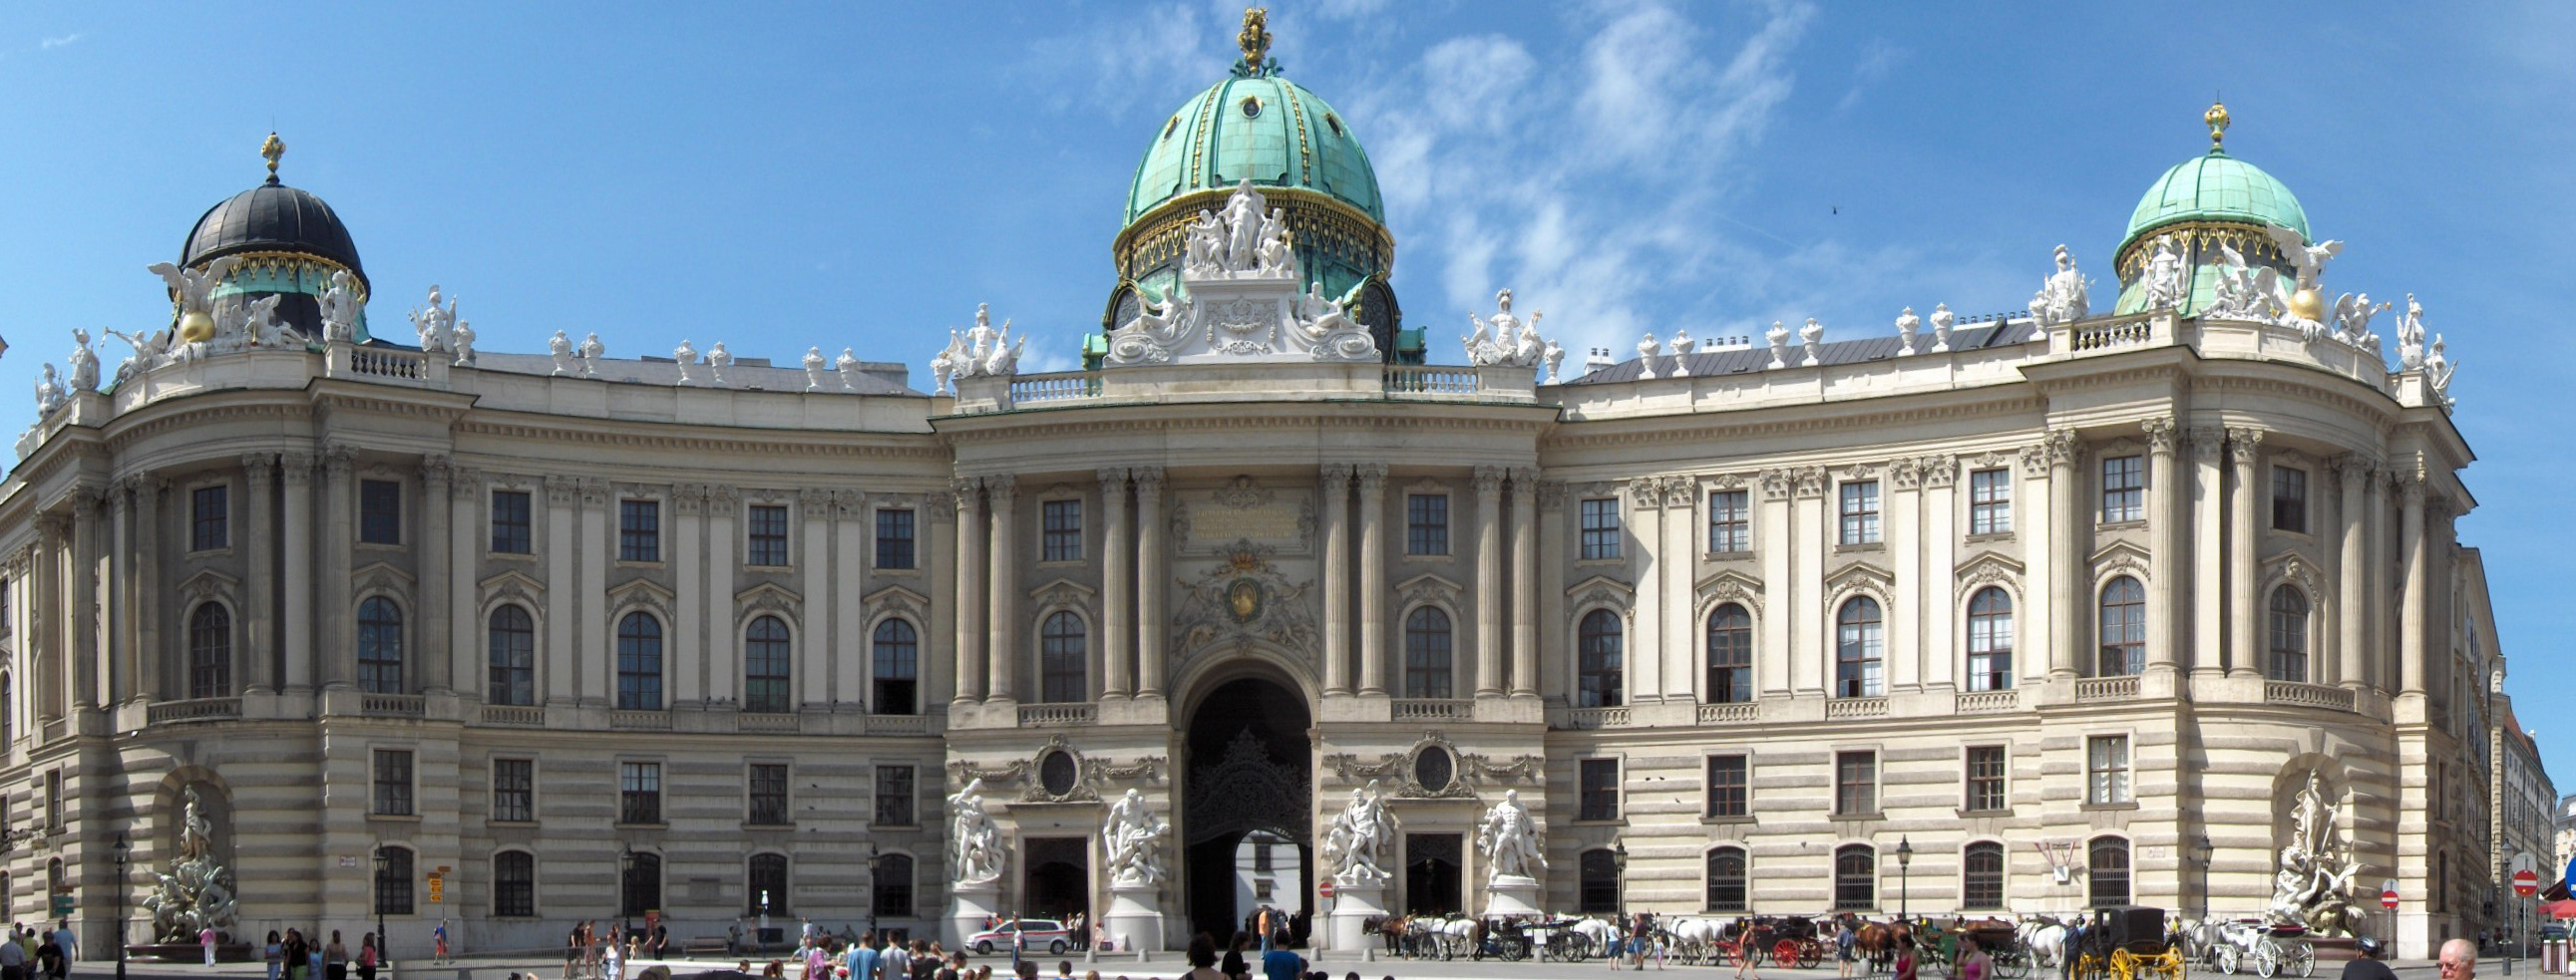 Roteiro pelo Centro Histórico de Viena_Palácio Hofburg_Viajando Bem